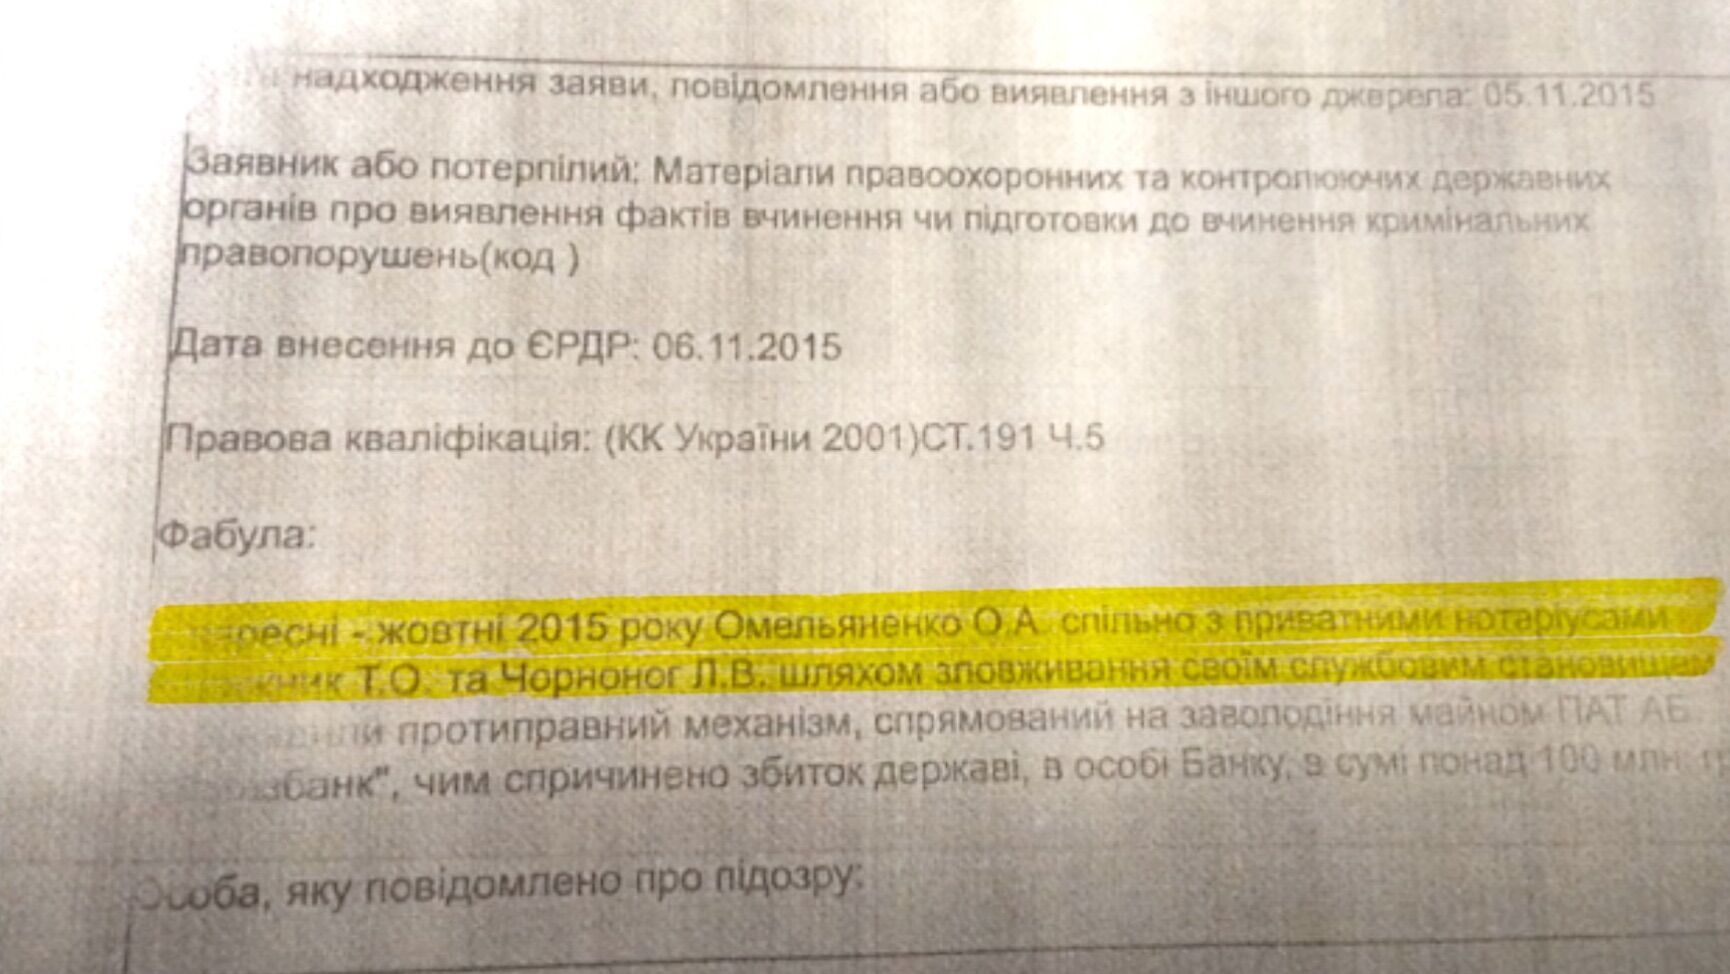 Олексія Омельяненка підозрювали у виведенні коштів держави через ''Укргазбанк''